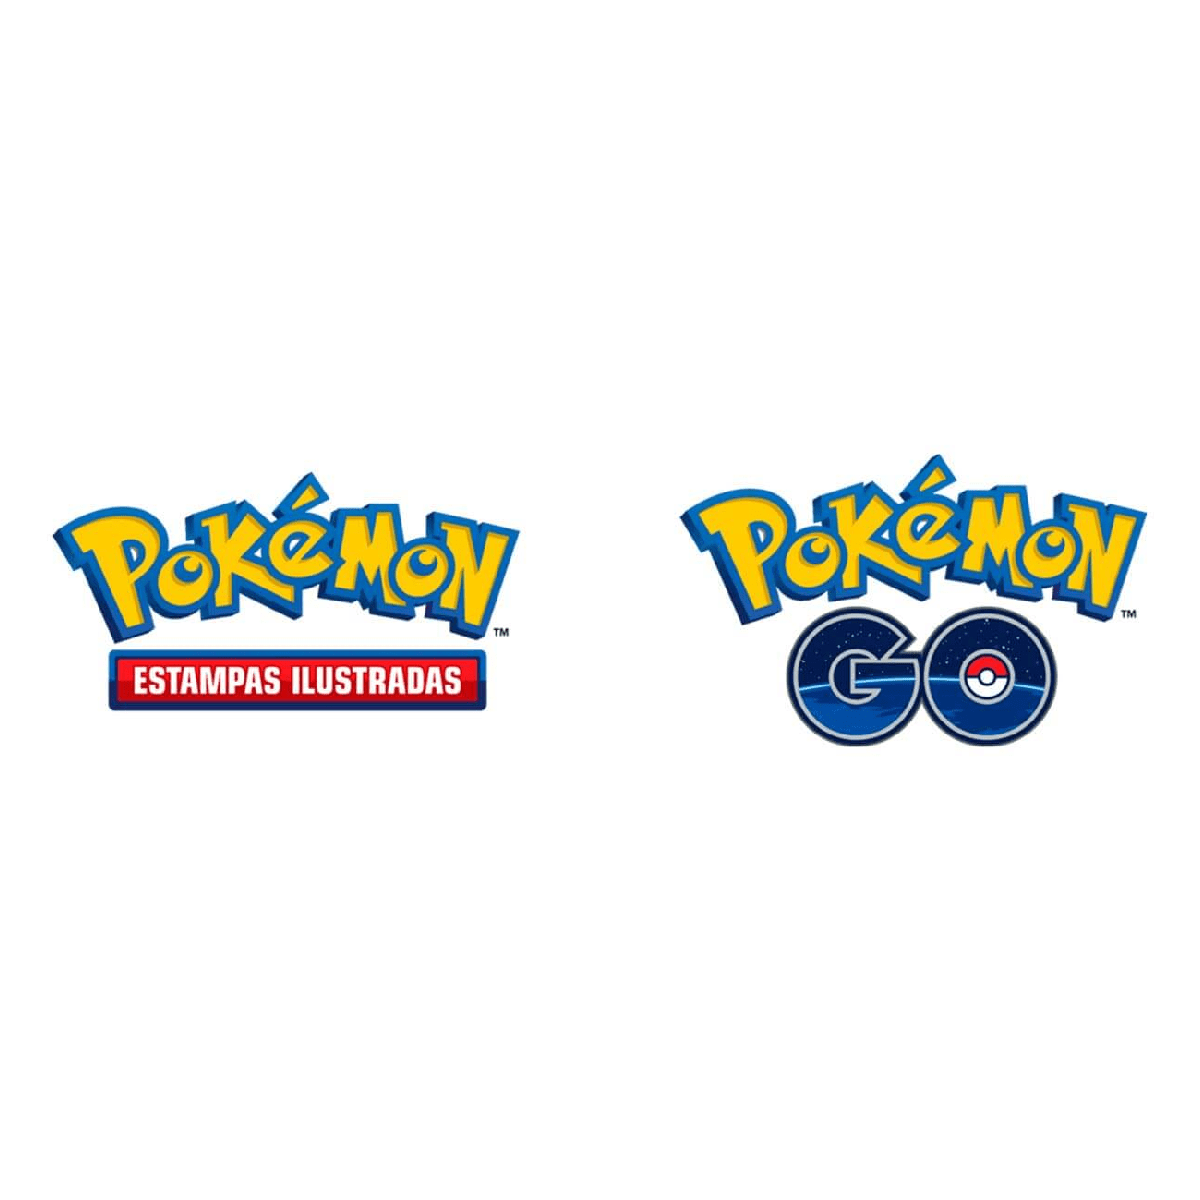 Caixa Box Cards Pokémon go Regieleki V Com 38 Cartas Copag em